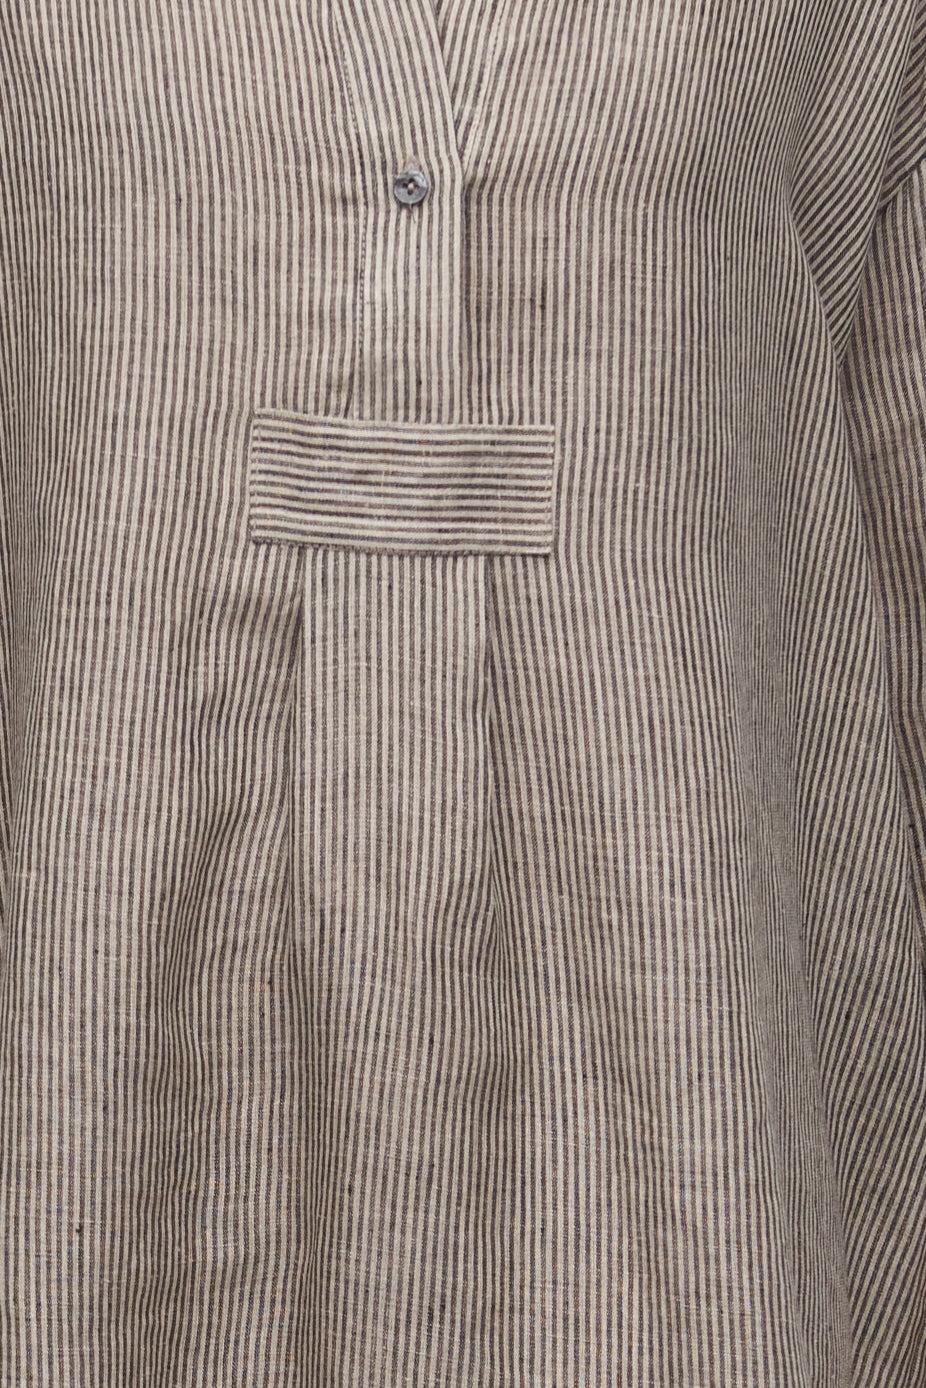 Long Sleep Shirt Black Natural Linen Stripe